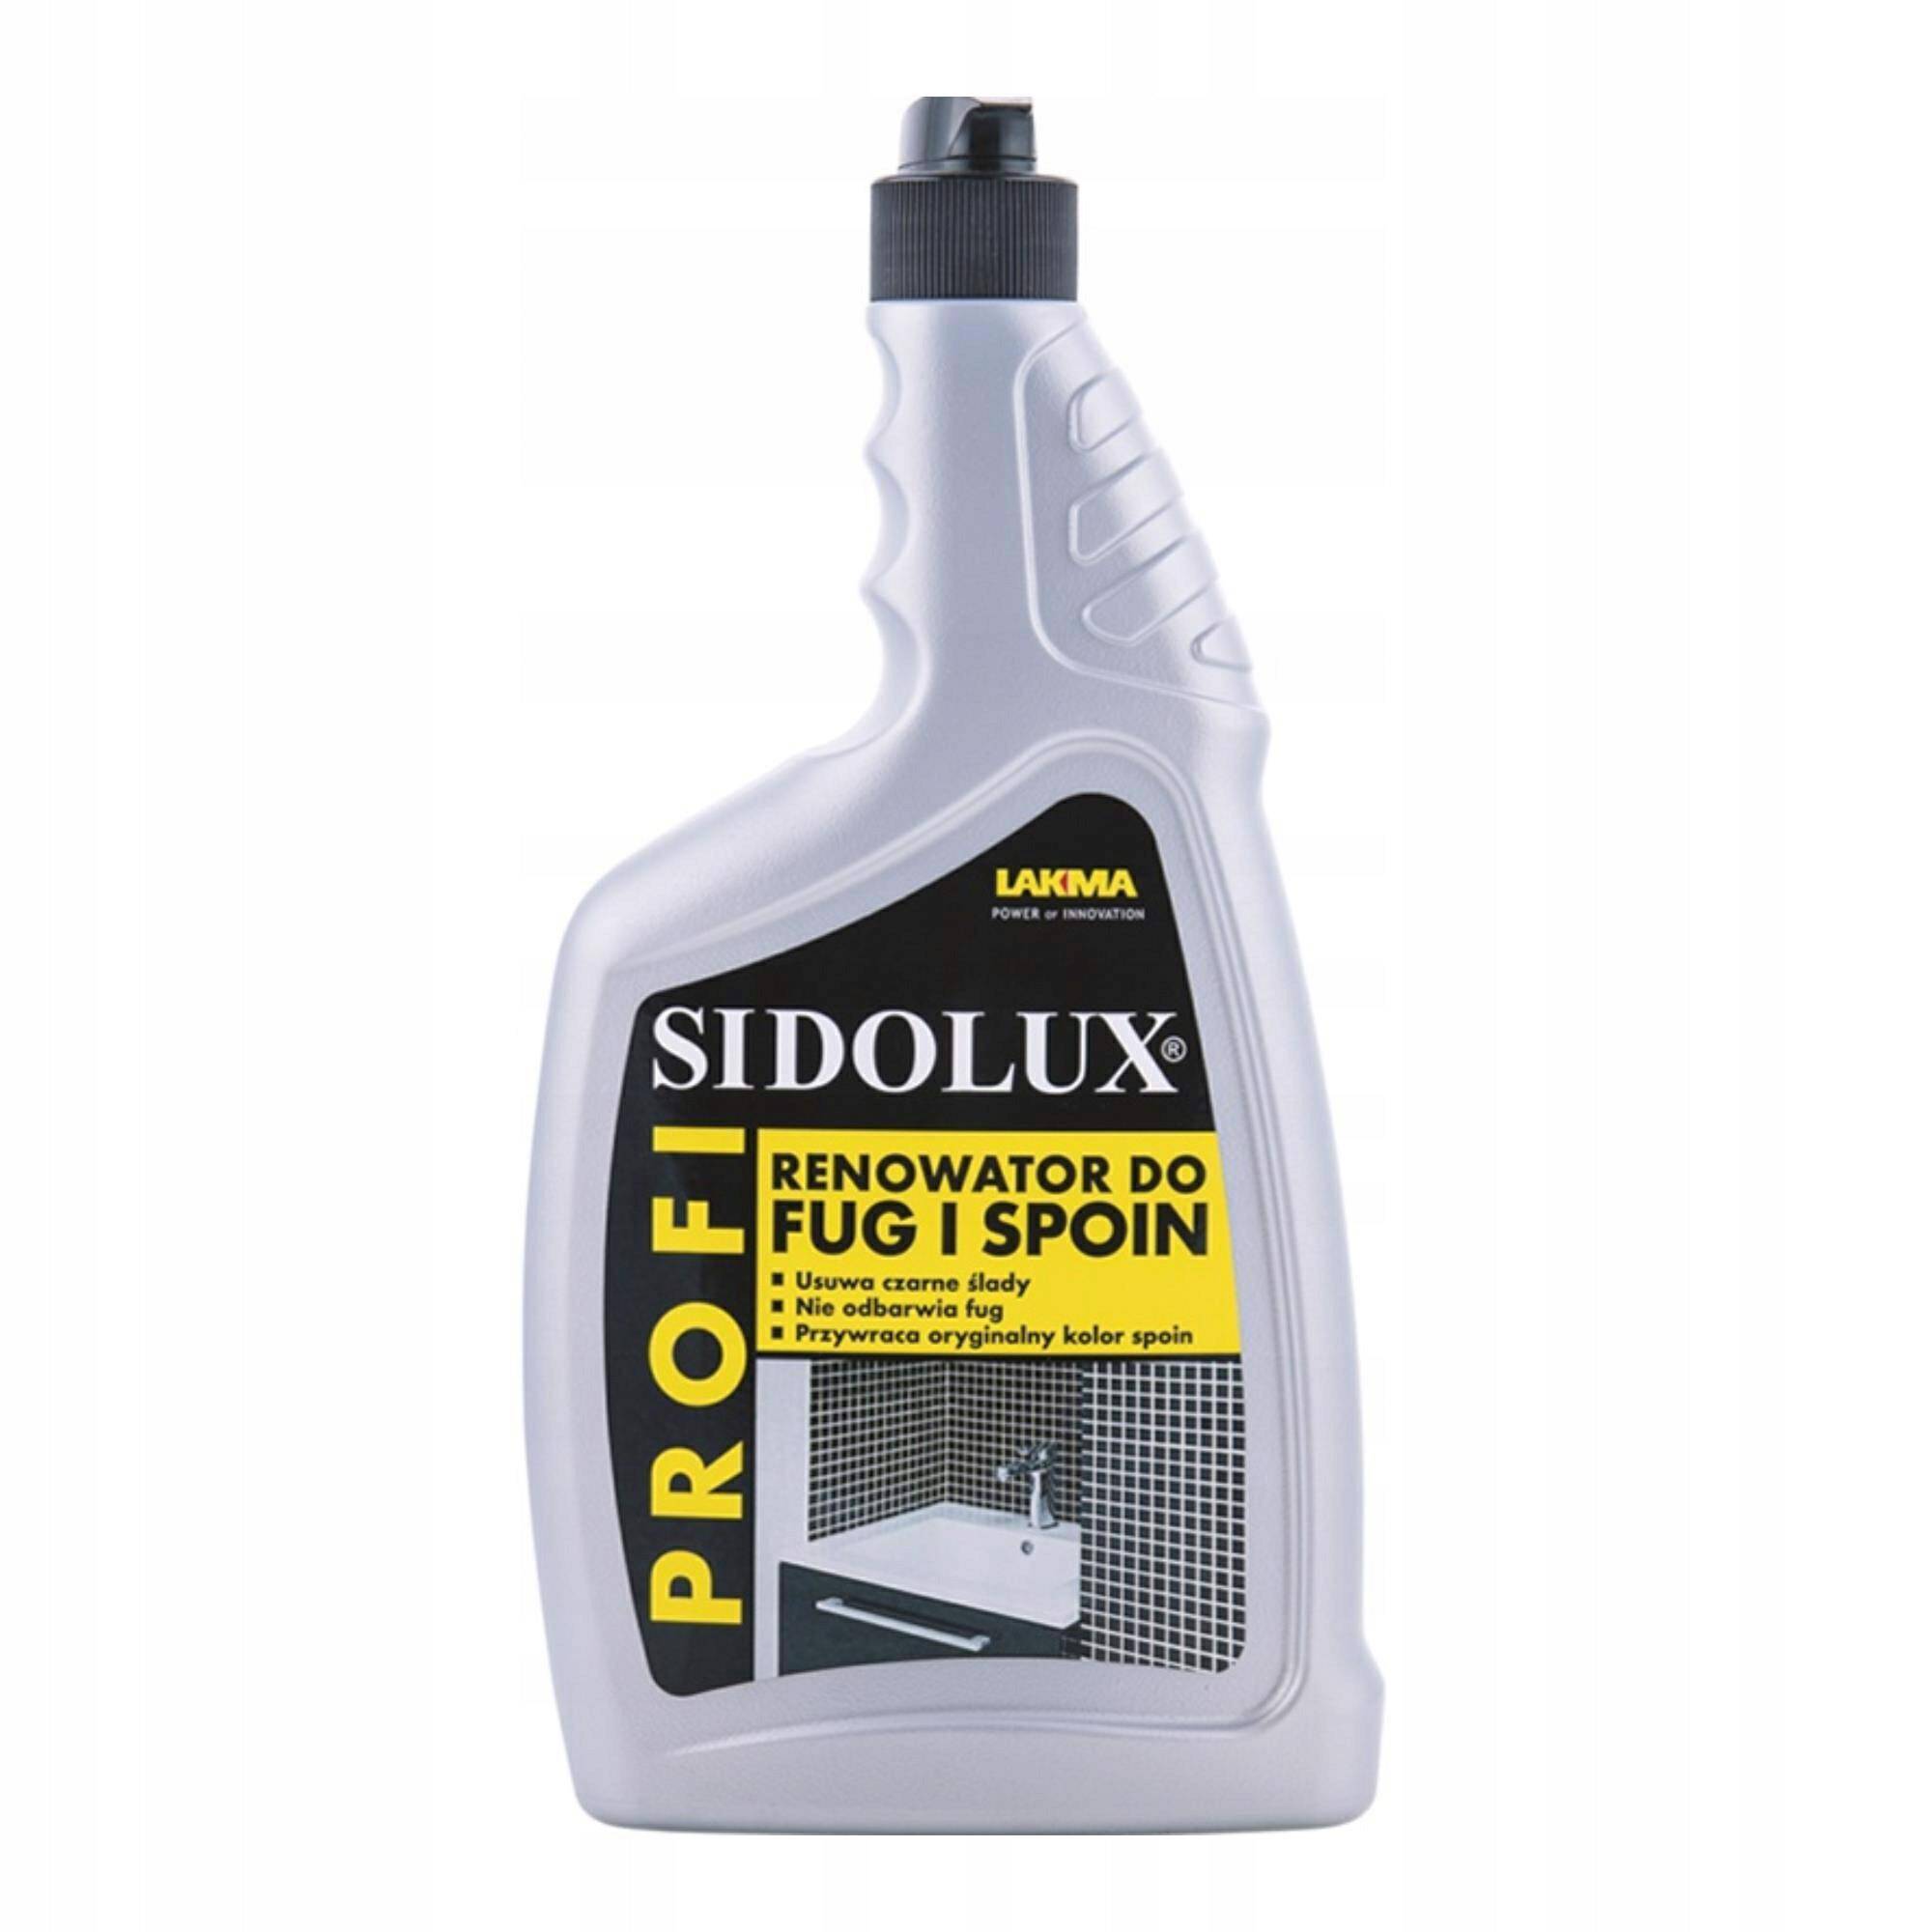 Sidolux PROFI renowator do fug i spoin to profesjonalny preparat do czyszczenia fug oraz spoin. (Zdjęcie 1)